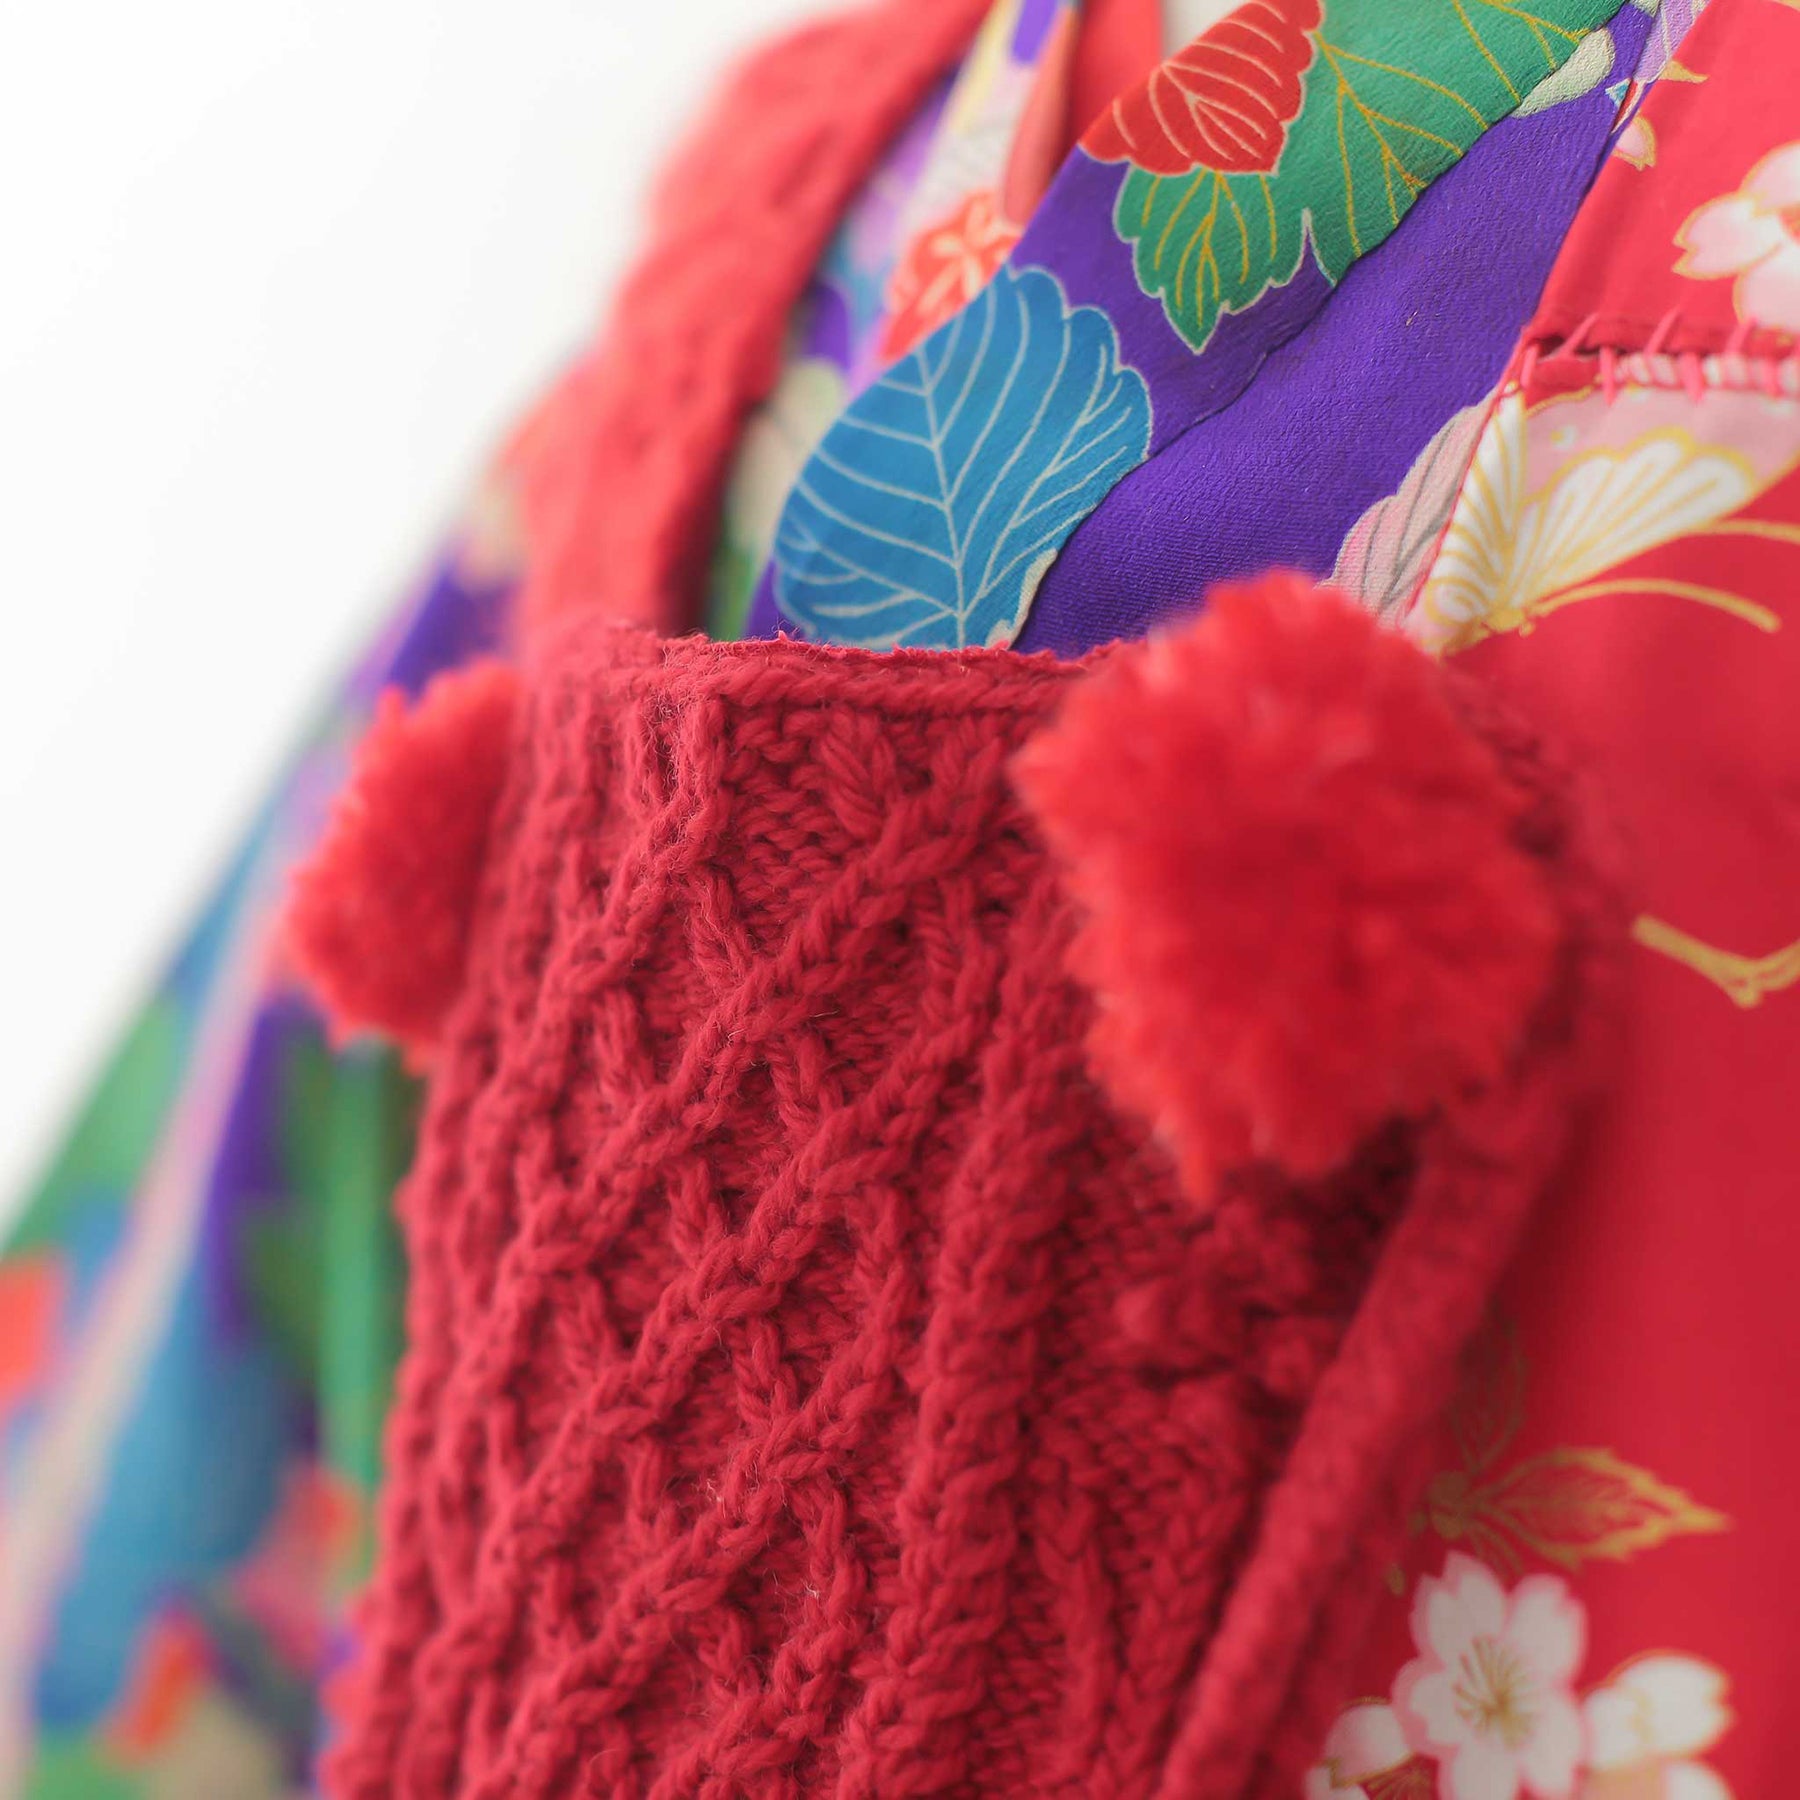 真っ赤な和柄の手編みニット被布 - heartmeltこども衣装レンタル